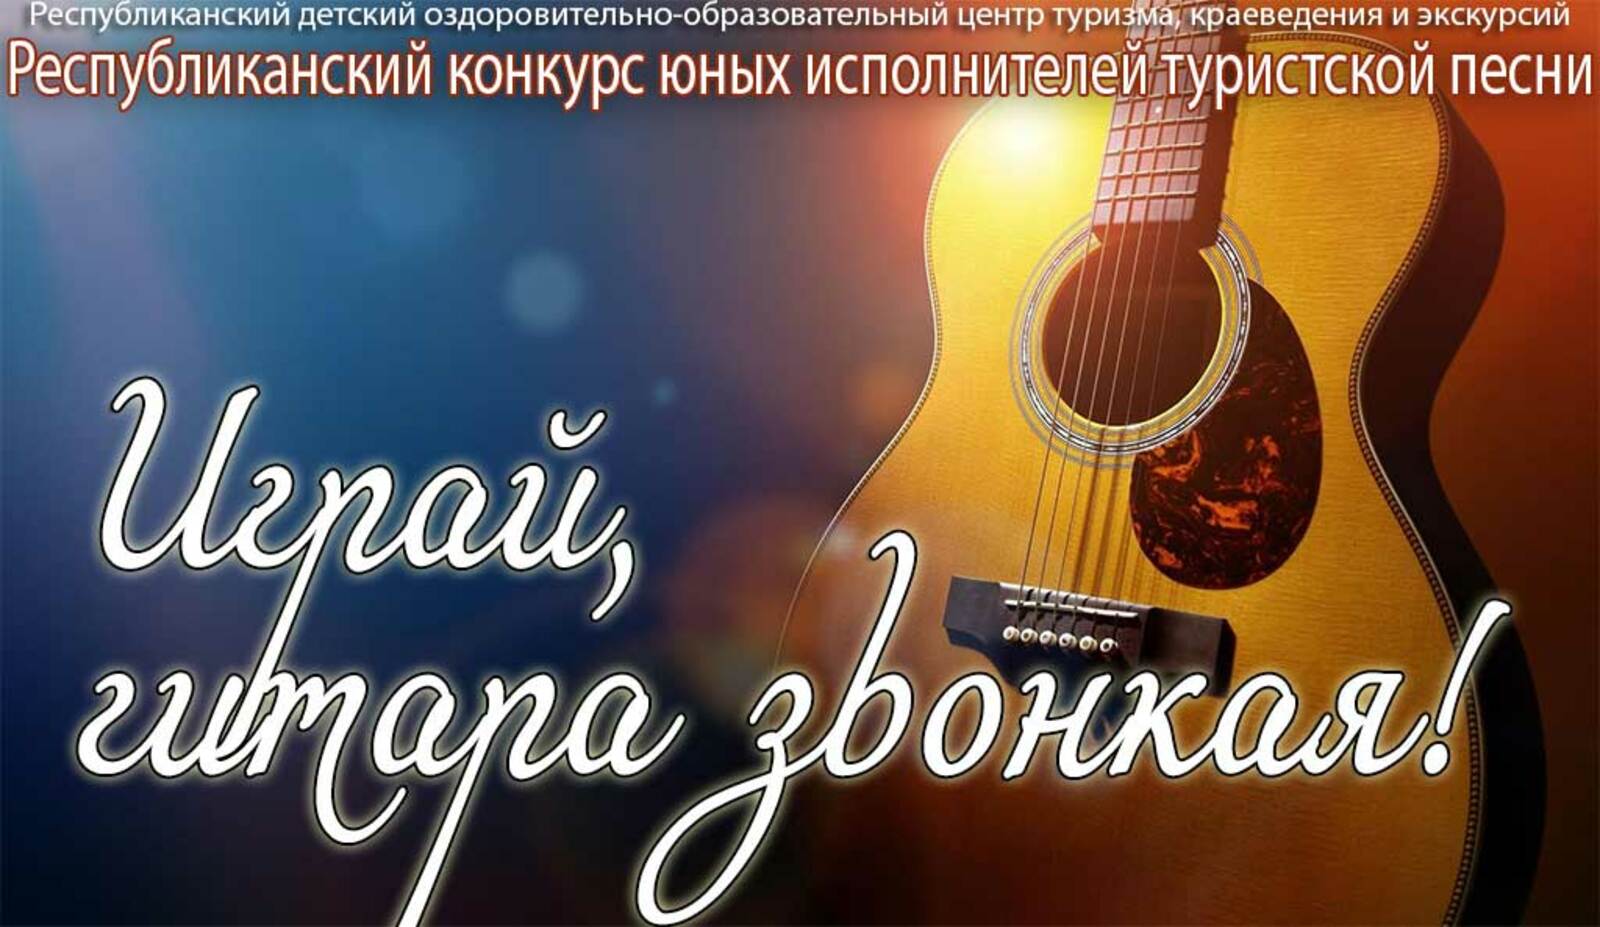 В Башкирии юные исполнители туристской песни примут участие в конкурсе к Дню космонавтики